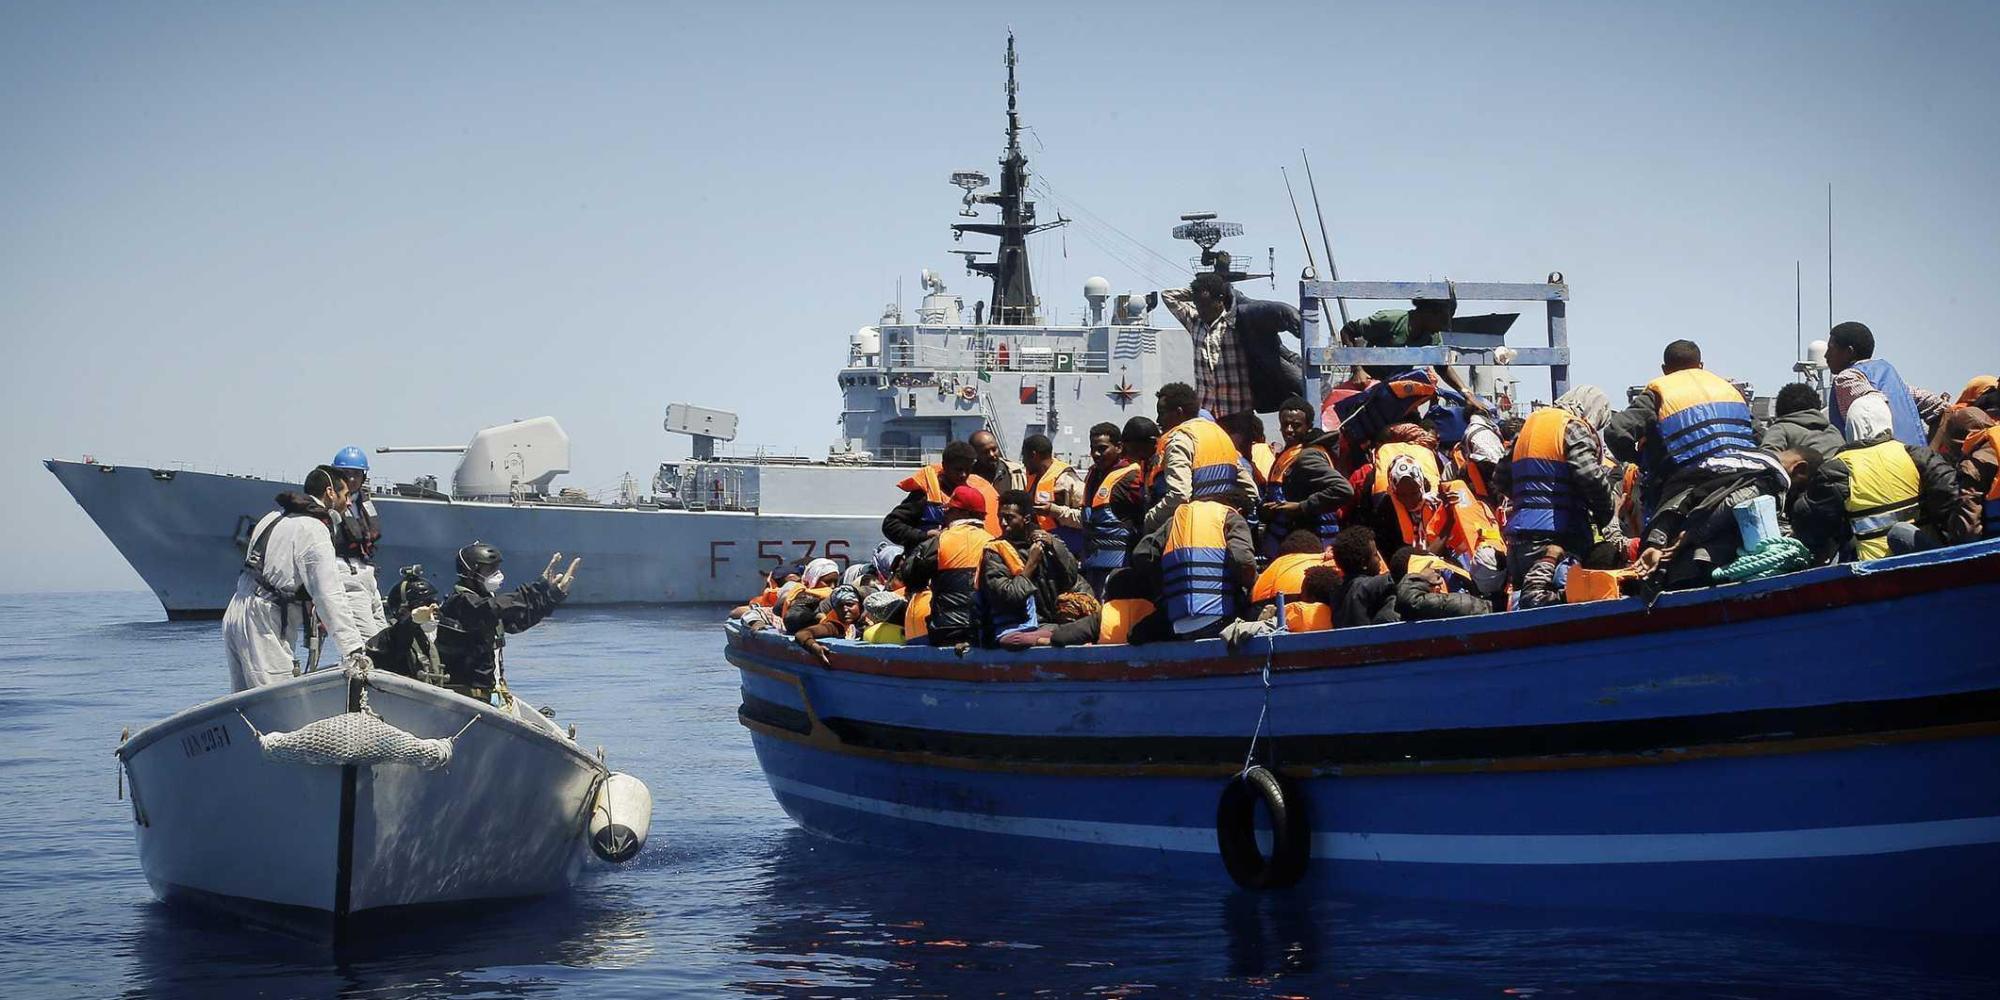 Uno degli obiettivi di "Mediterraneo Sicuro" è da sempre il contrasto al traffico di esseri umani e il salvataggio, quando necessario, dei migranti in difficoltà.